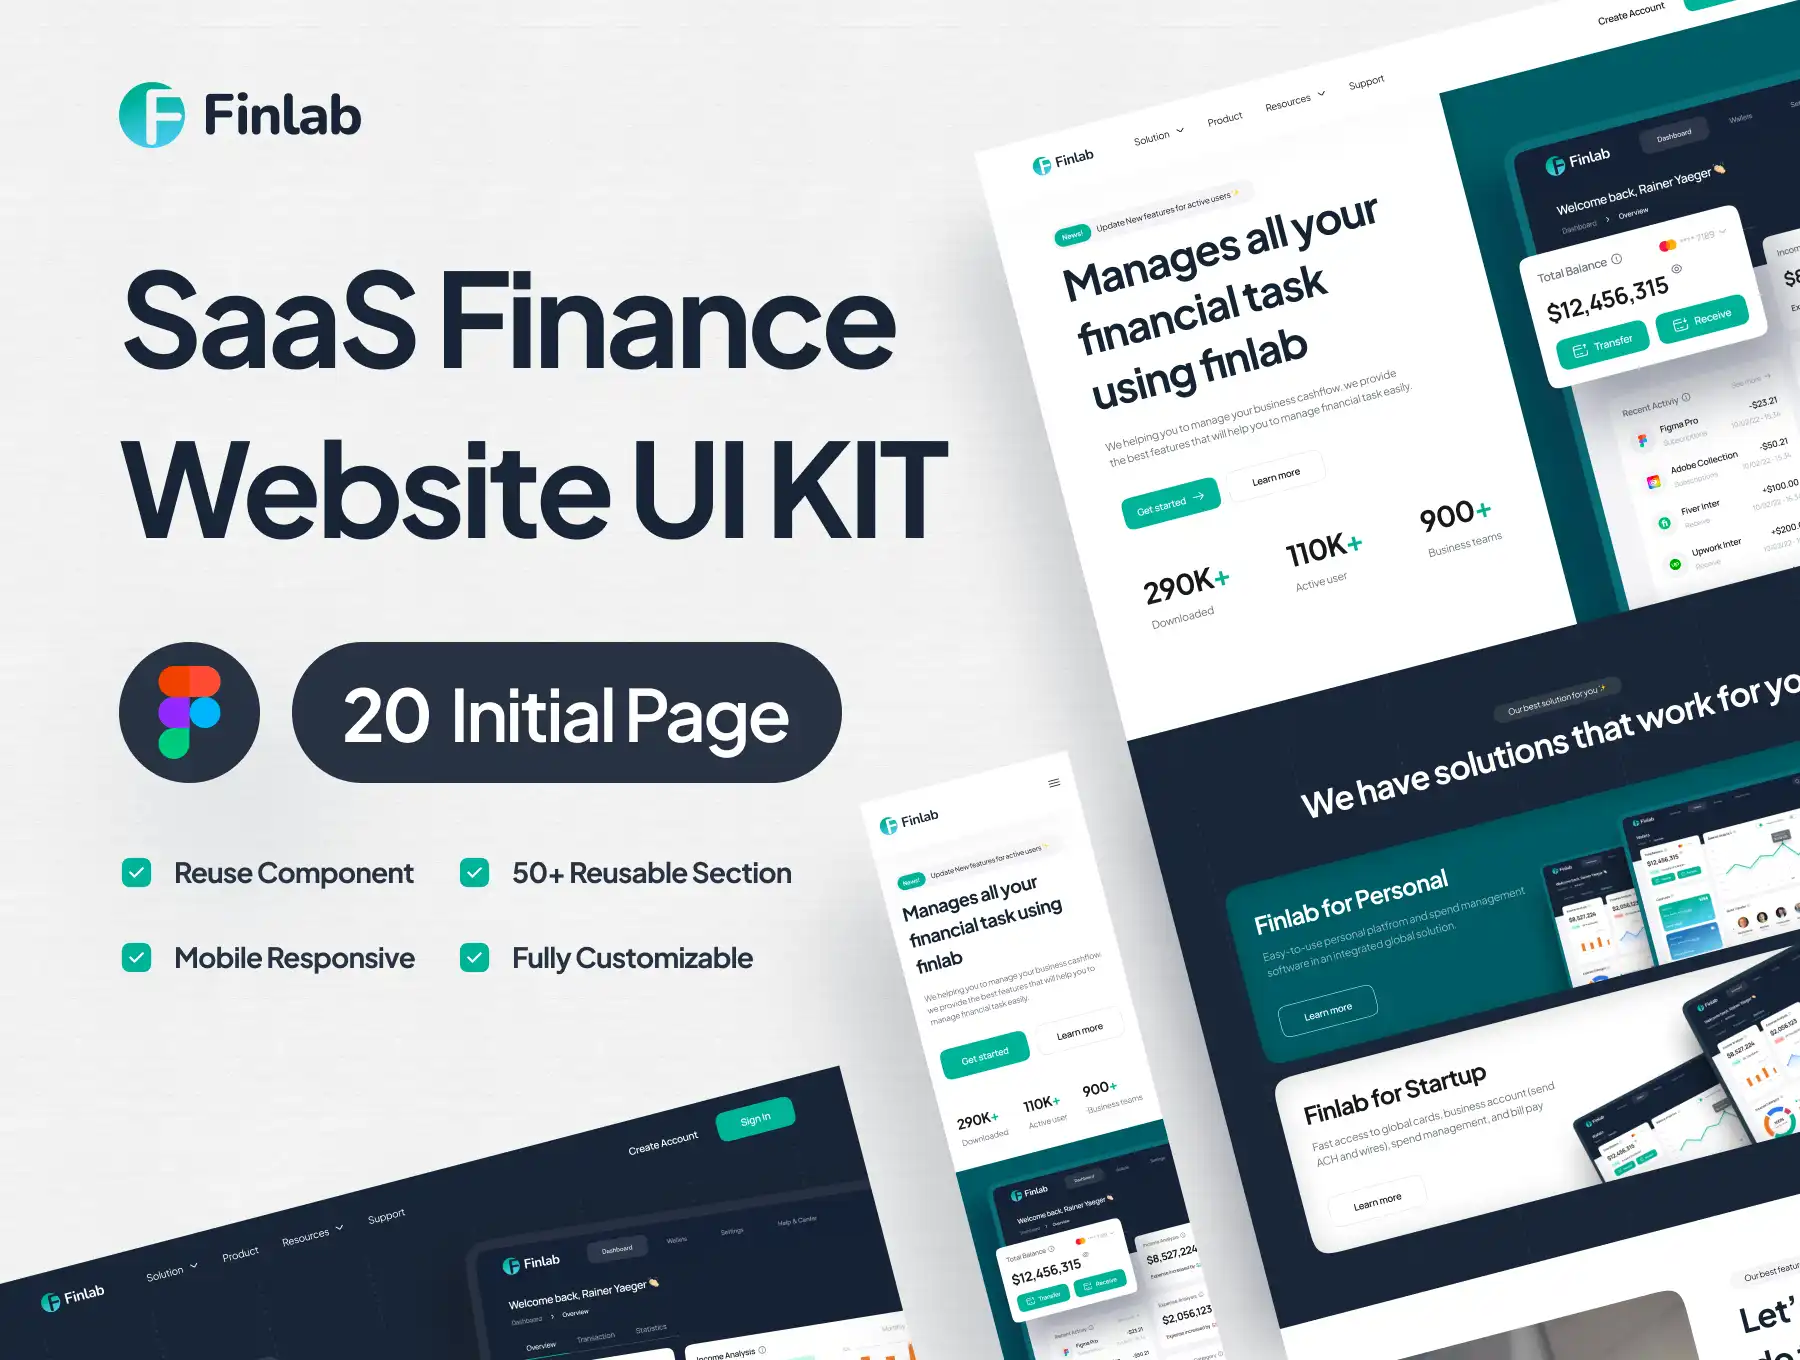 [VIP] Finlab: SaaS Finance Website UI Kit